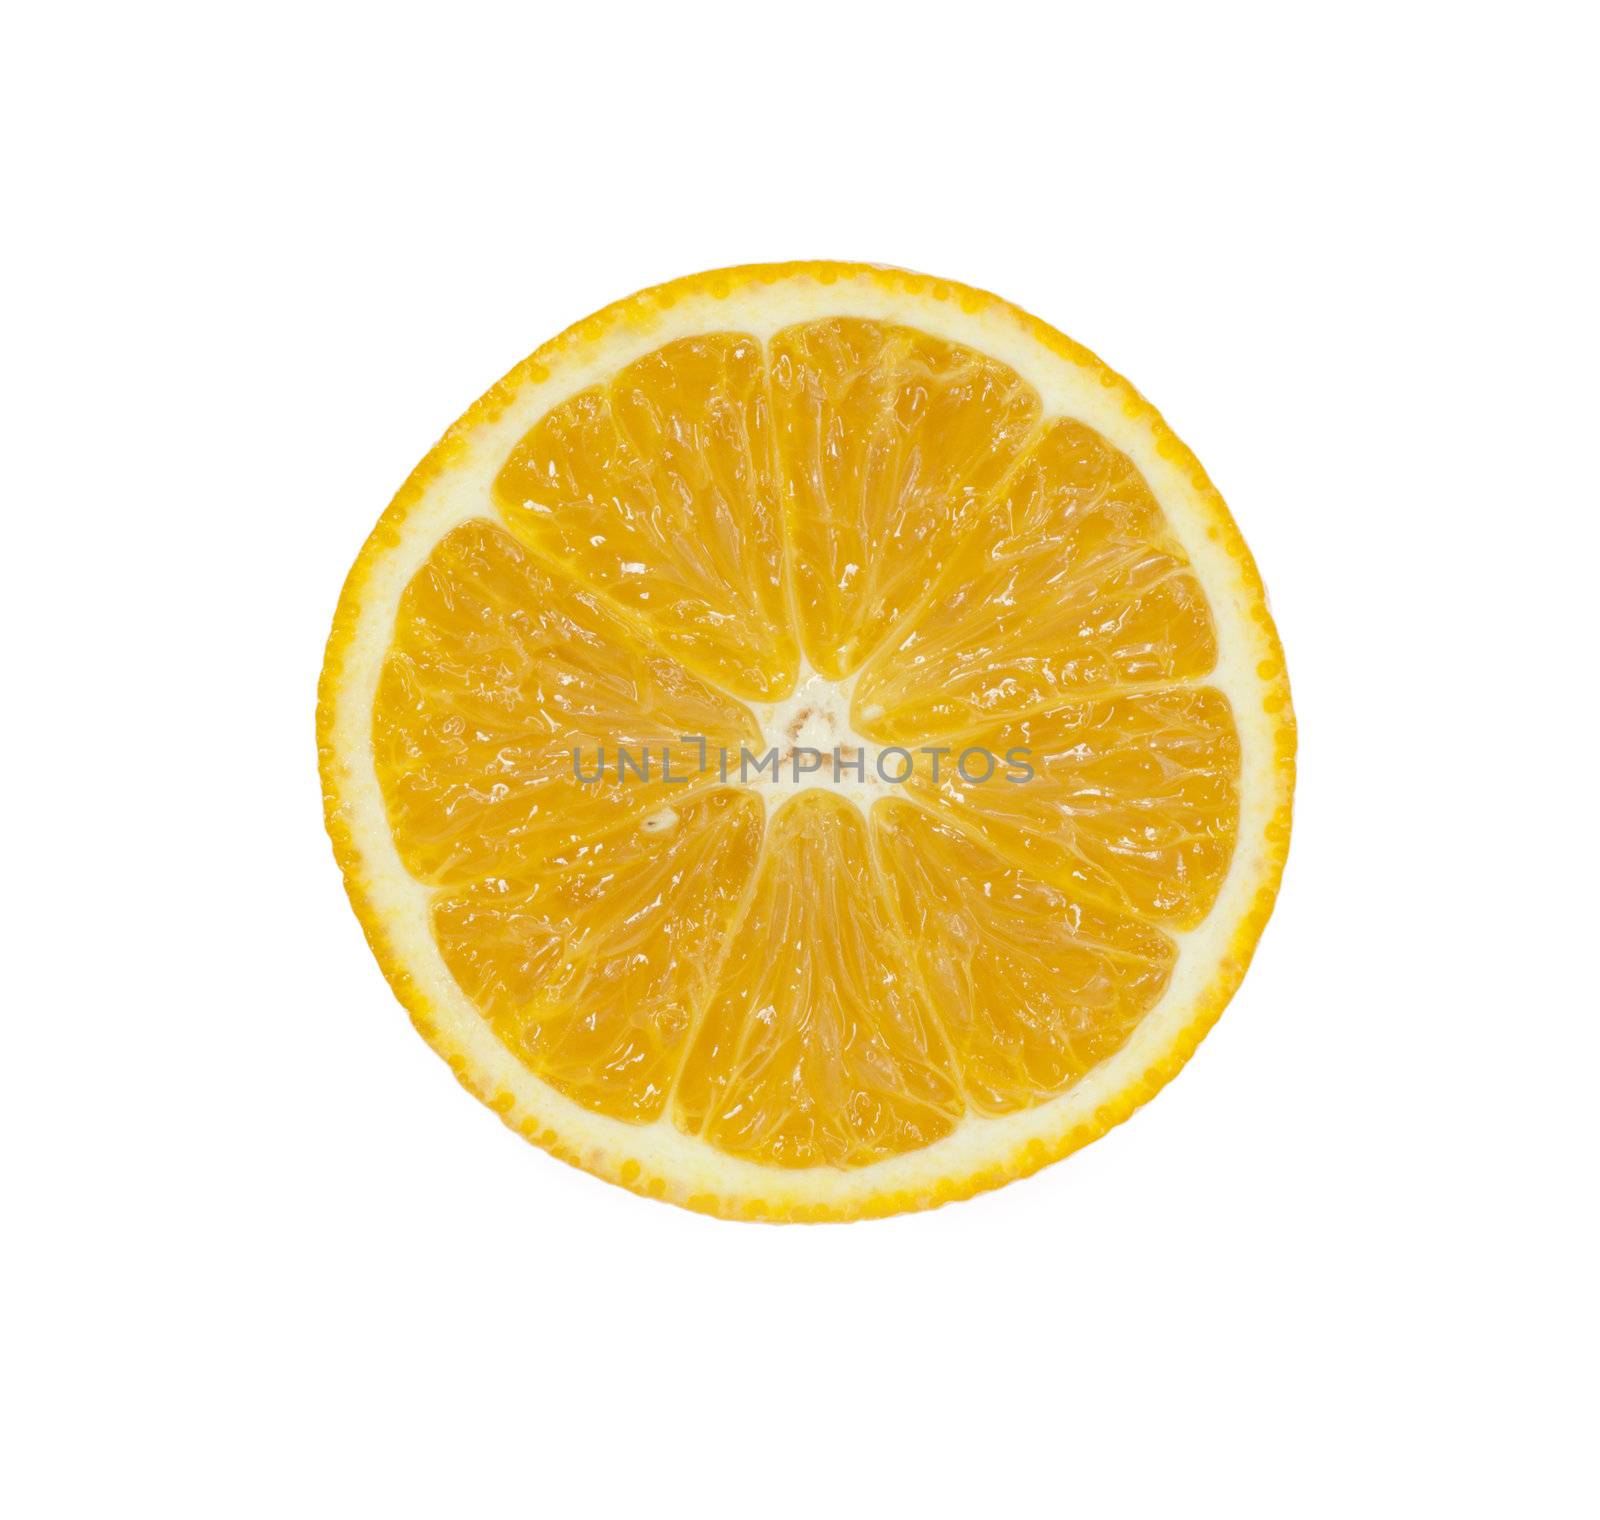 Slice of orange 